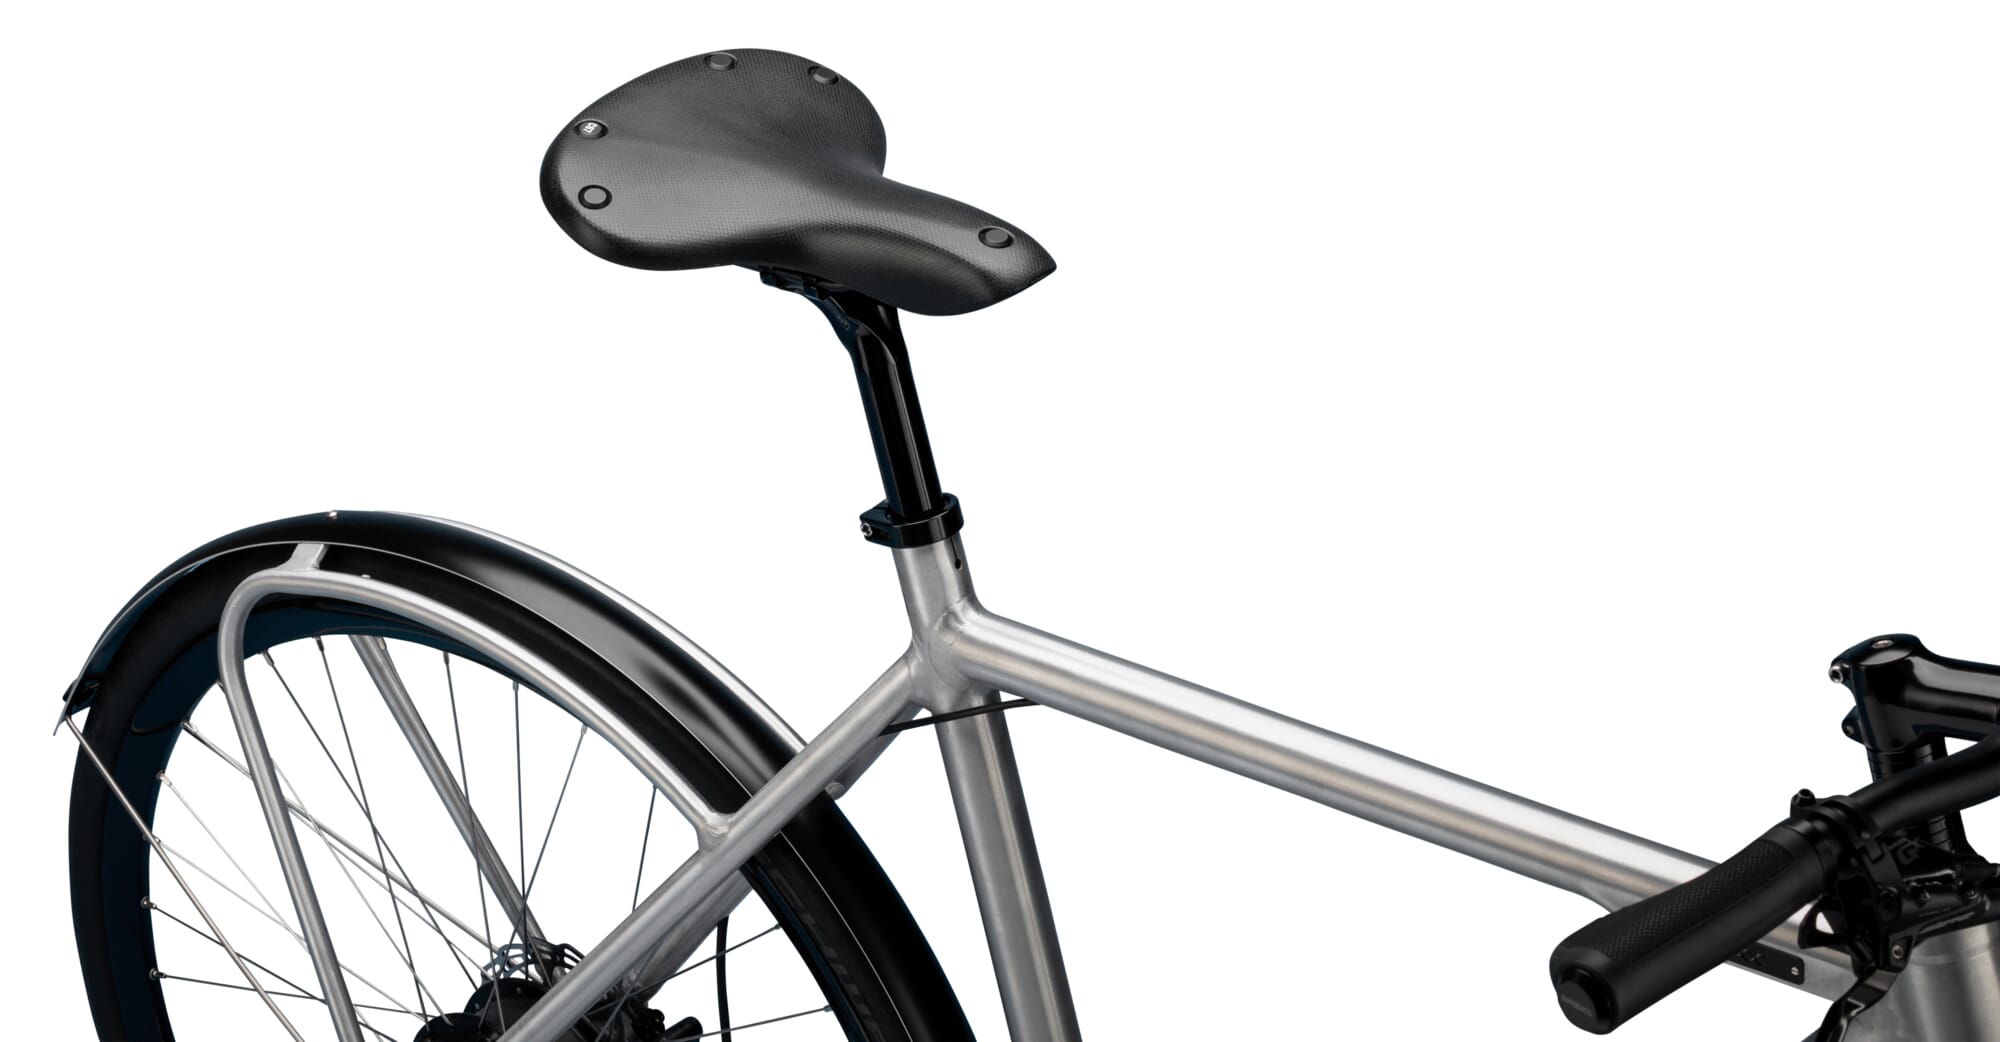 Cambium C67 bike saddle | Manufactum